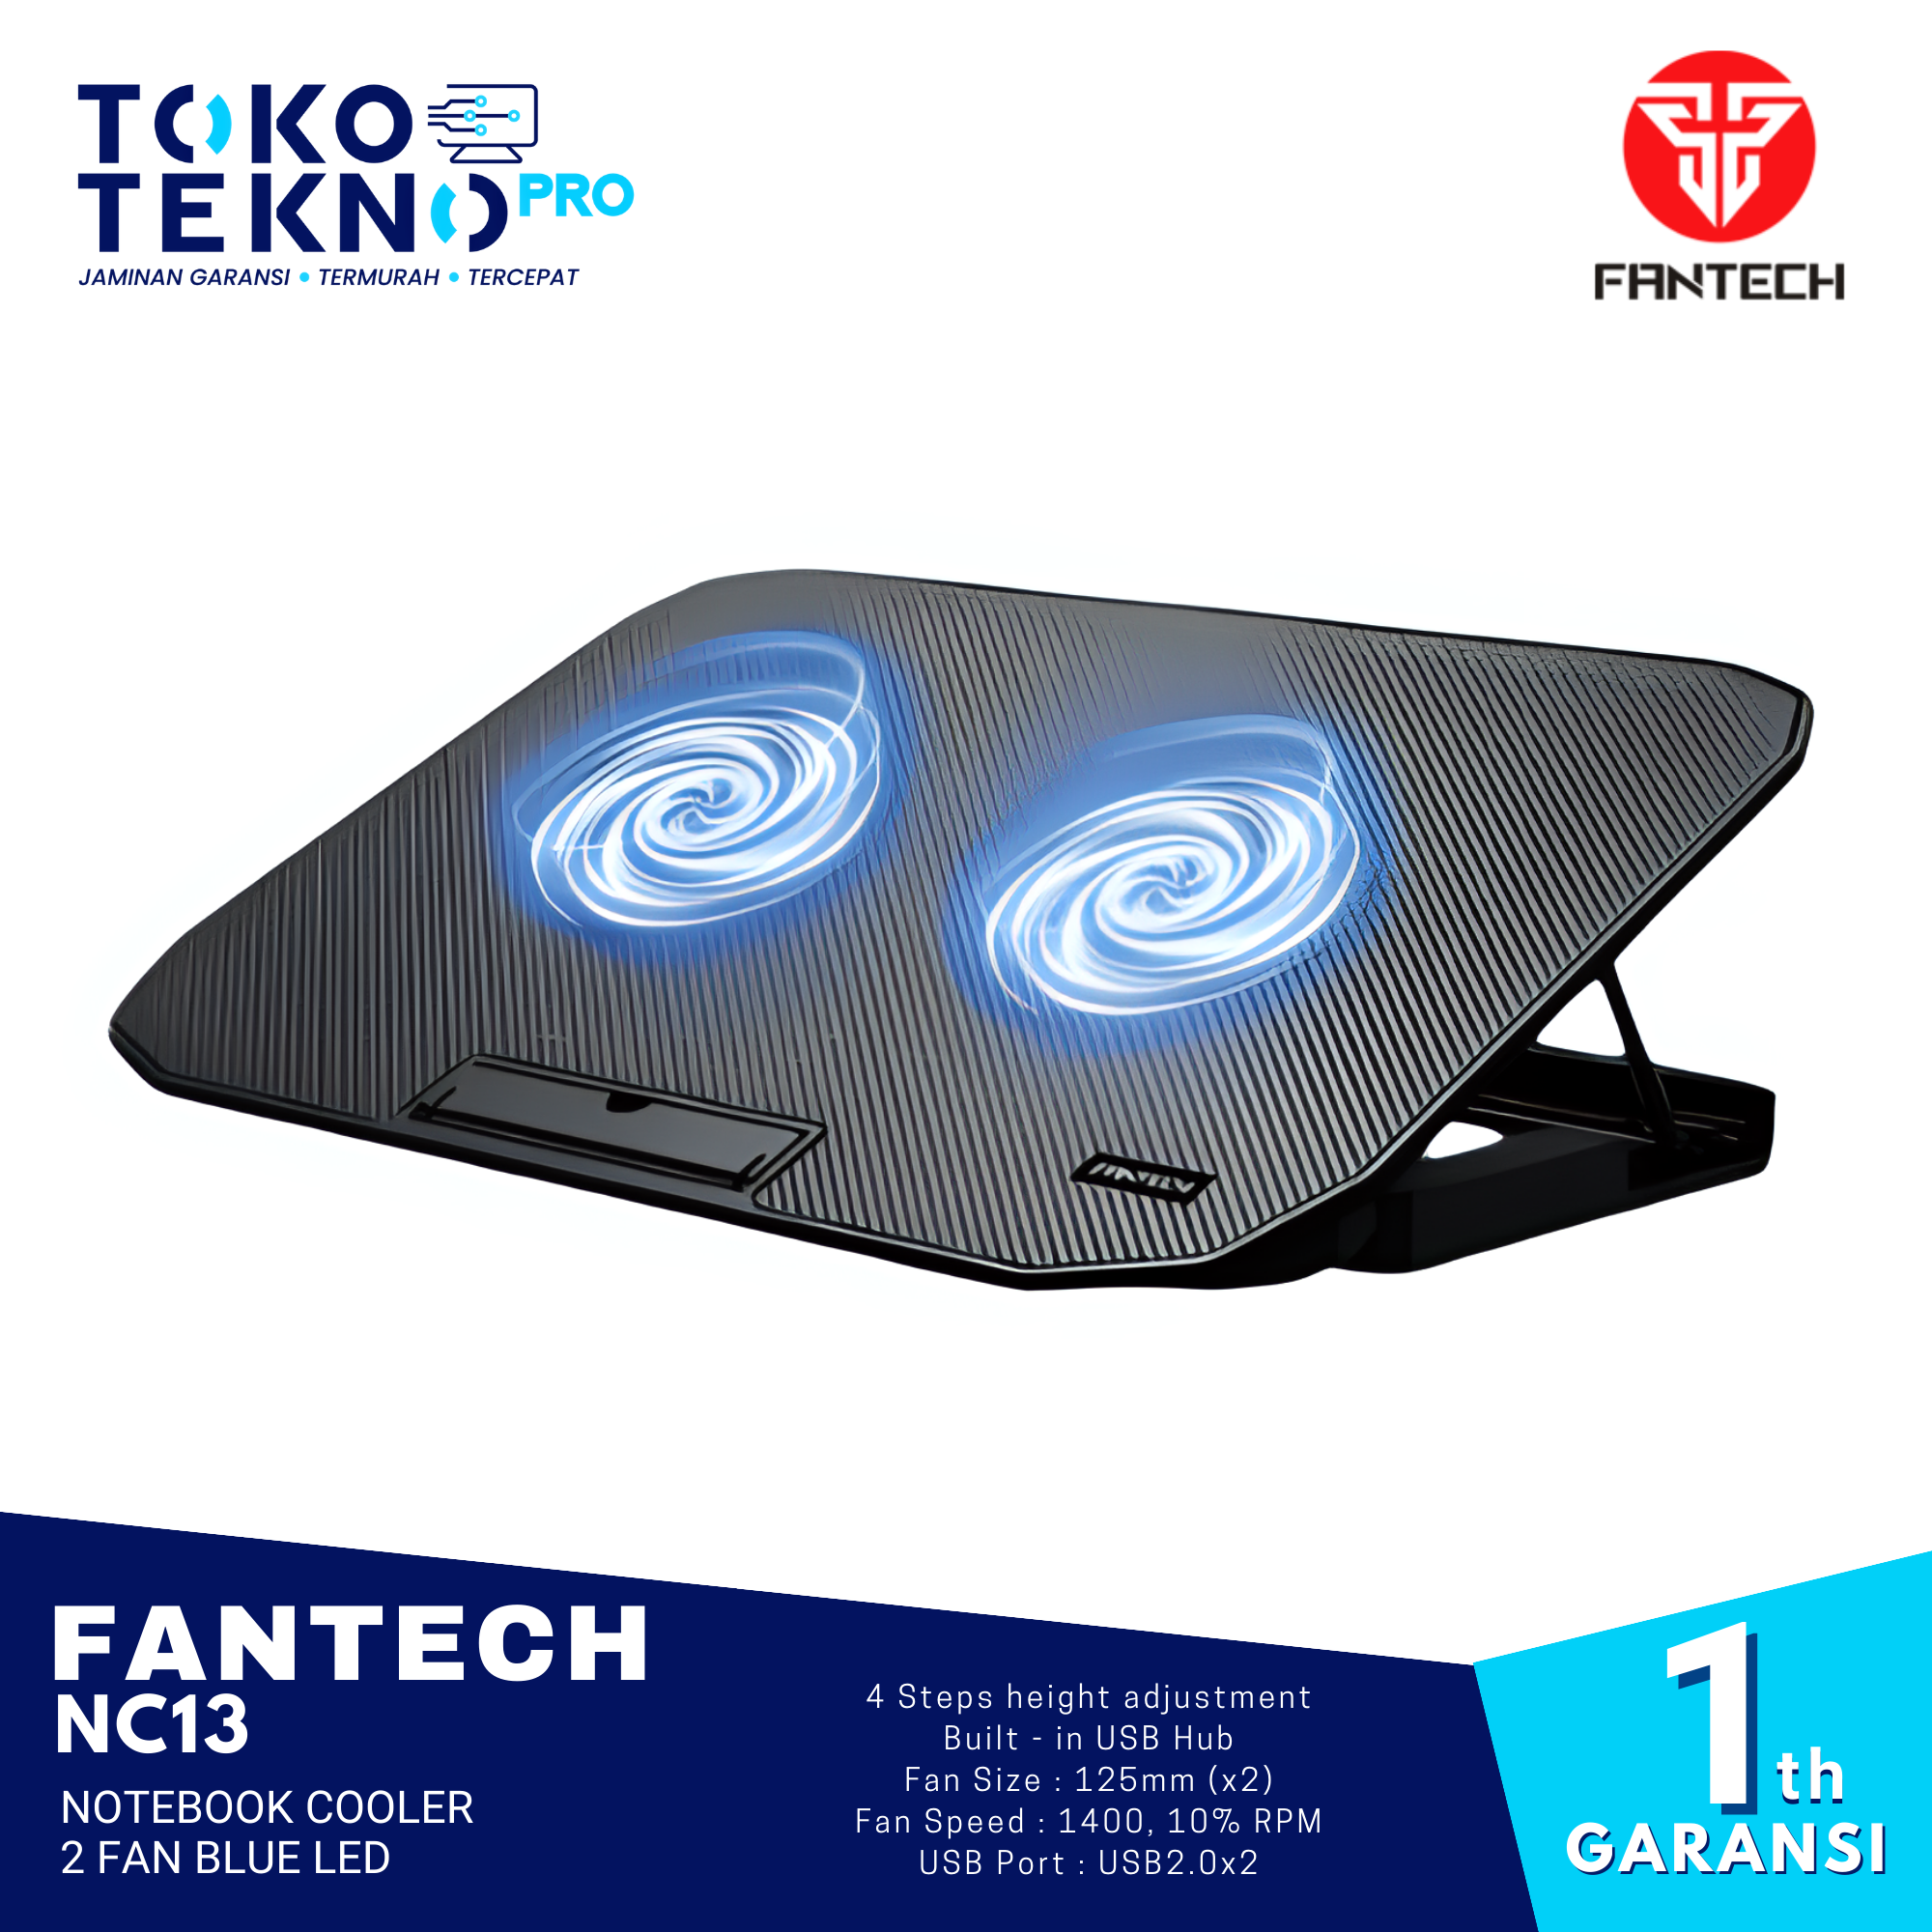 Fantech NC13 Notebook Cooler 2 Fan Blue LED